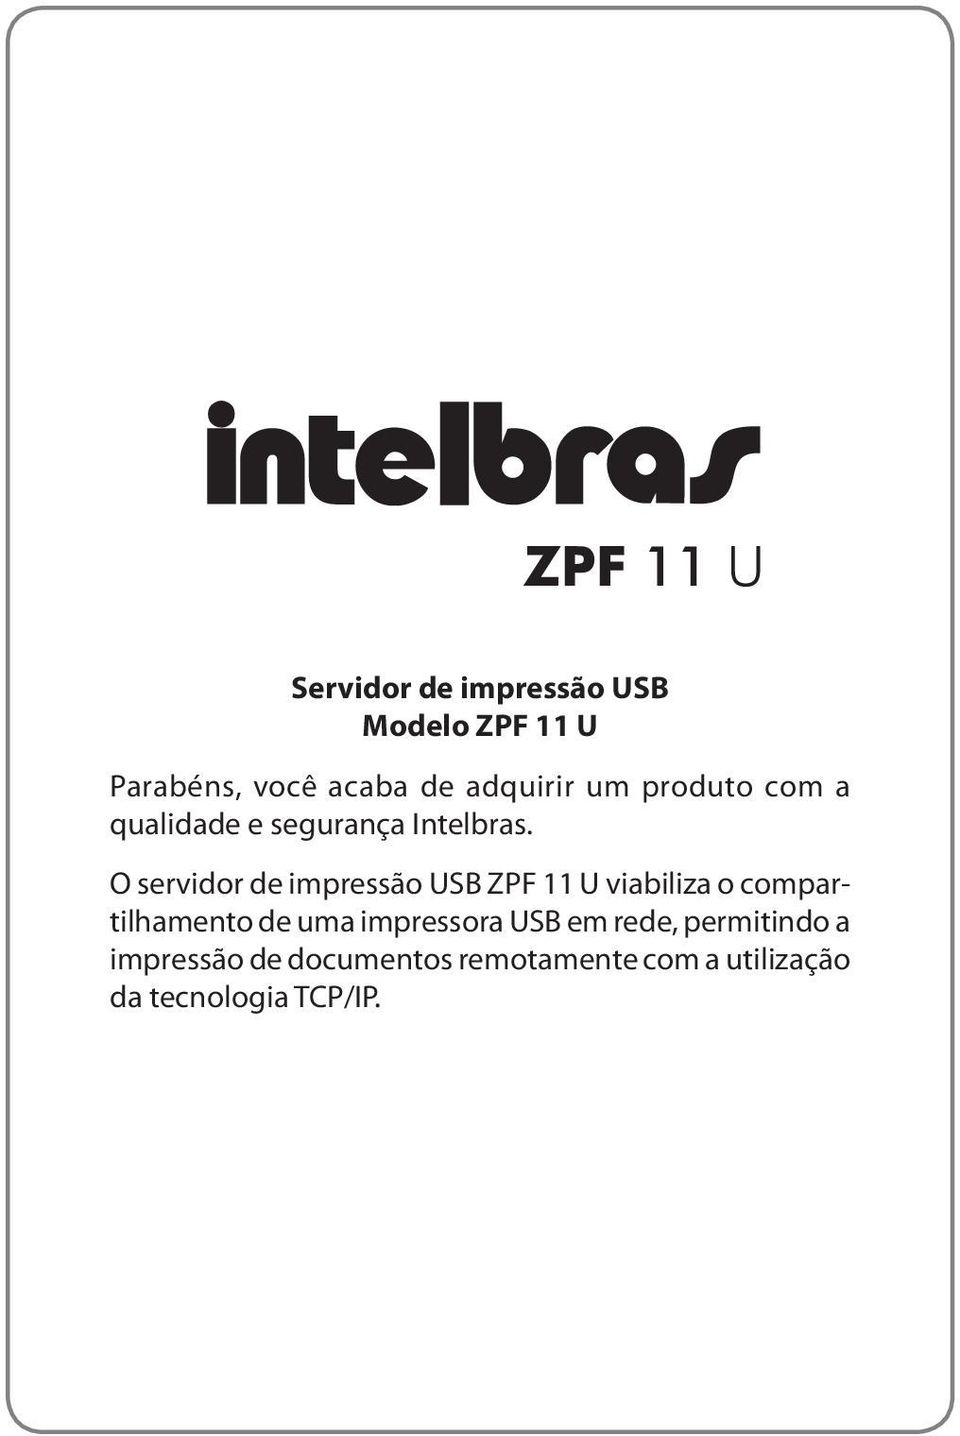 O servidor de impressão USB ZPF 11 U viabiliza o compartilhamento de uma